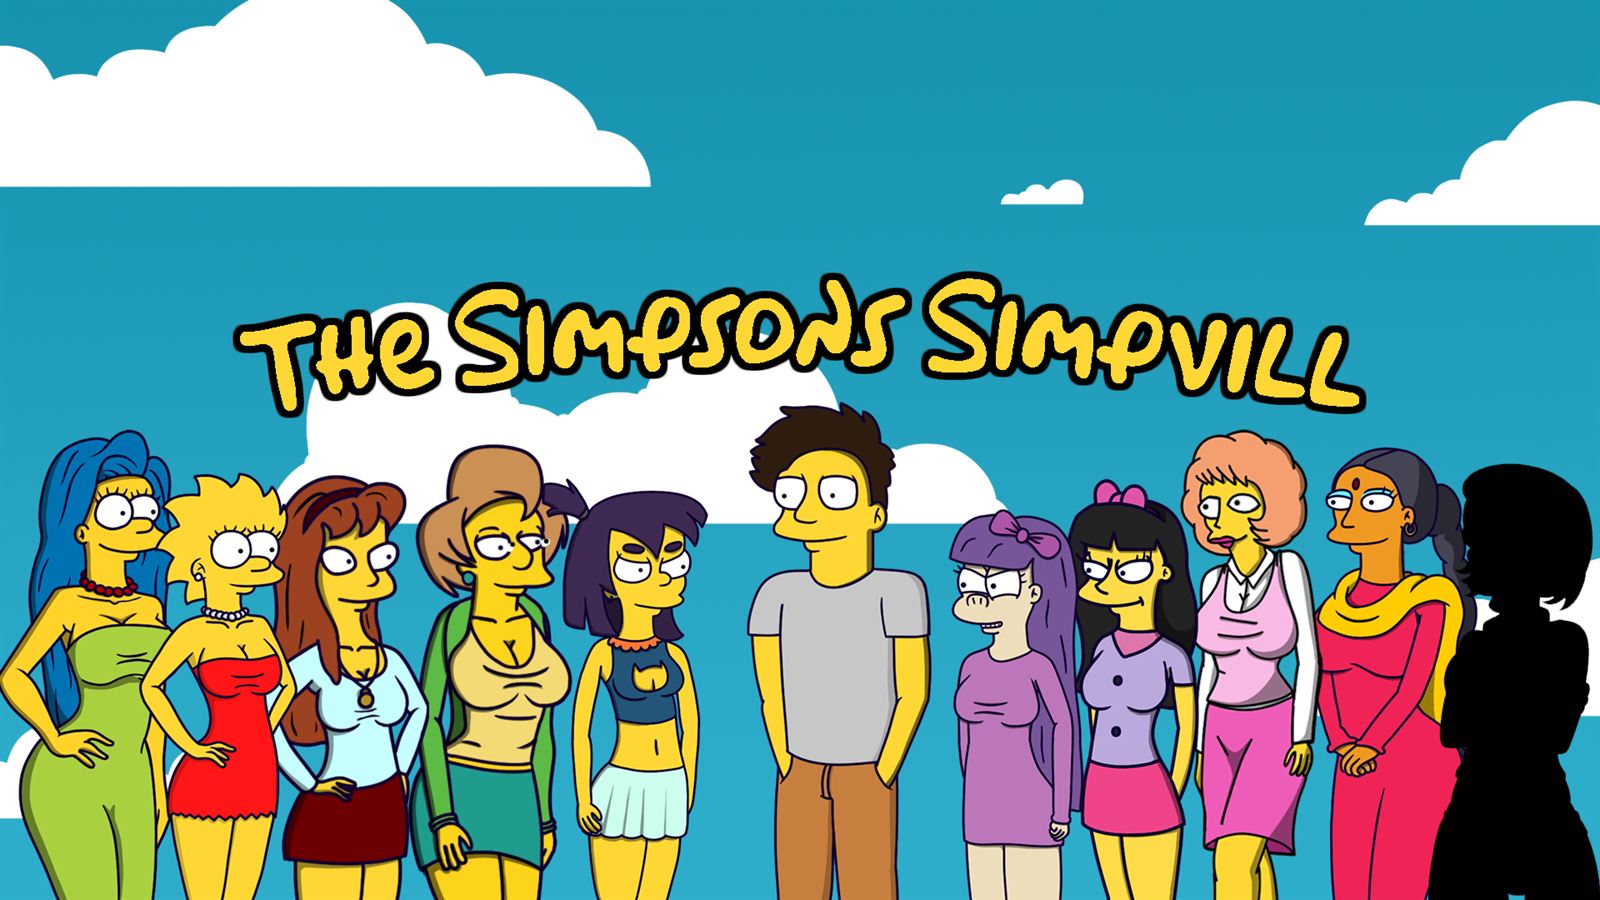 Simpson sex game